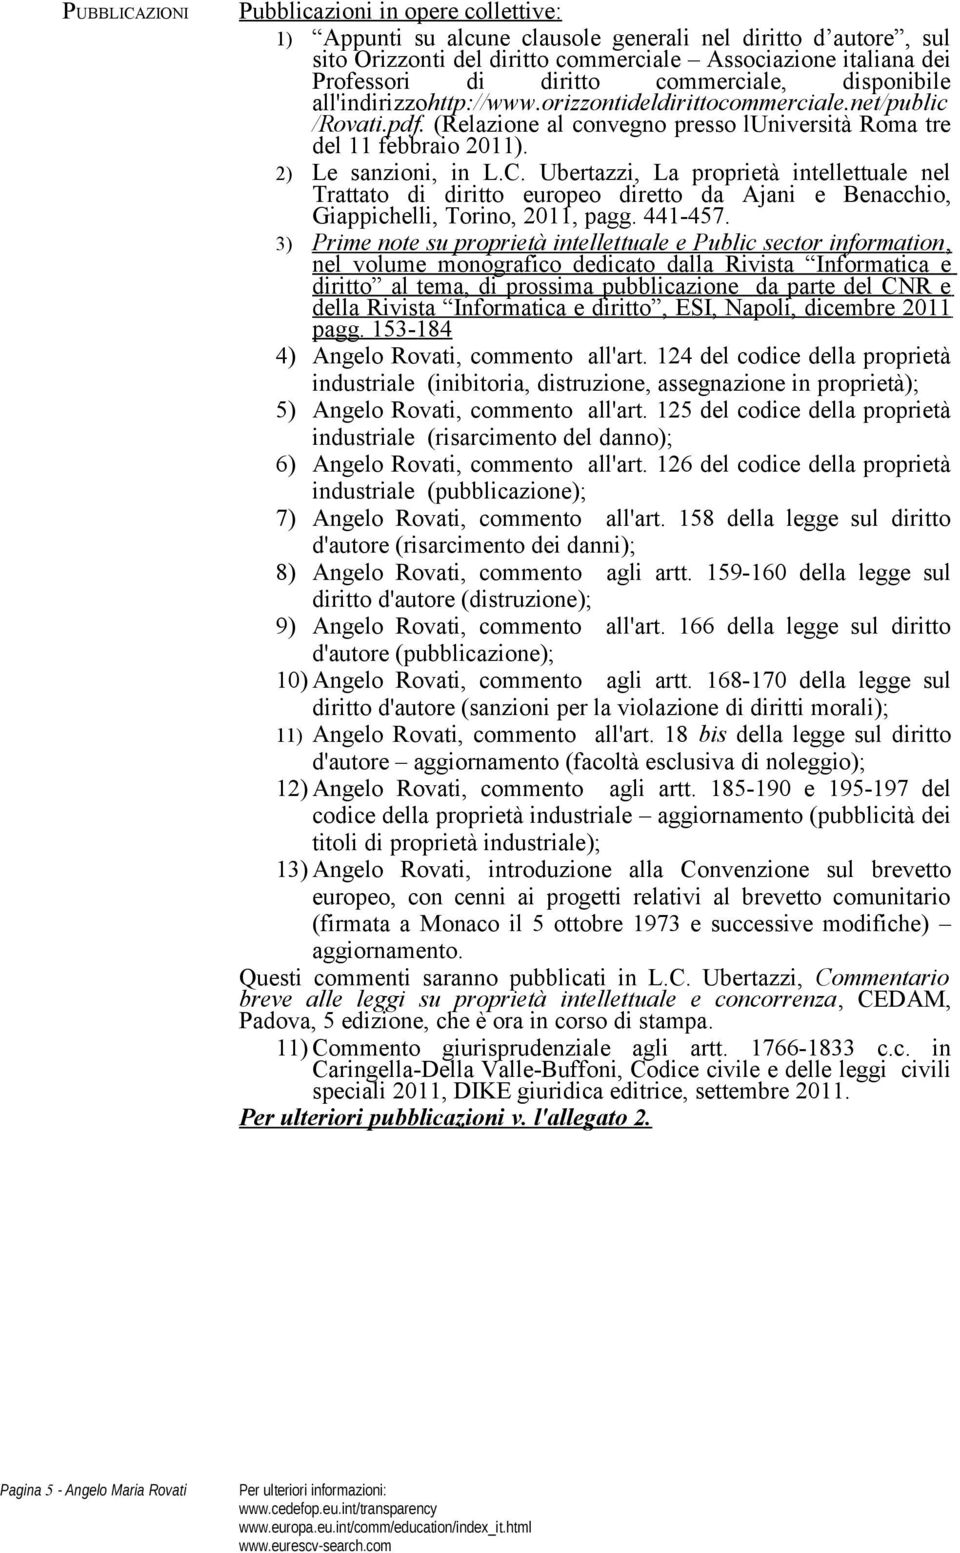 2) Le sanzioni, in L.C. Ubertazzi, La proprietà intellettuale nel Trattato di diritto europeo diretto da Ajani e Benacchio, Giappichelli, Torino, 2011, pagg. 441-457.